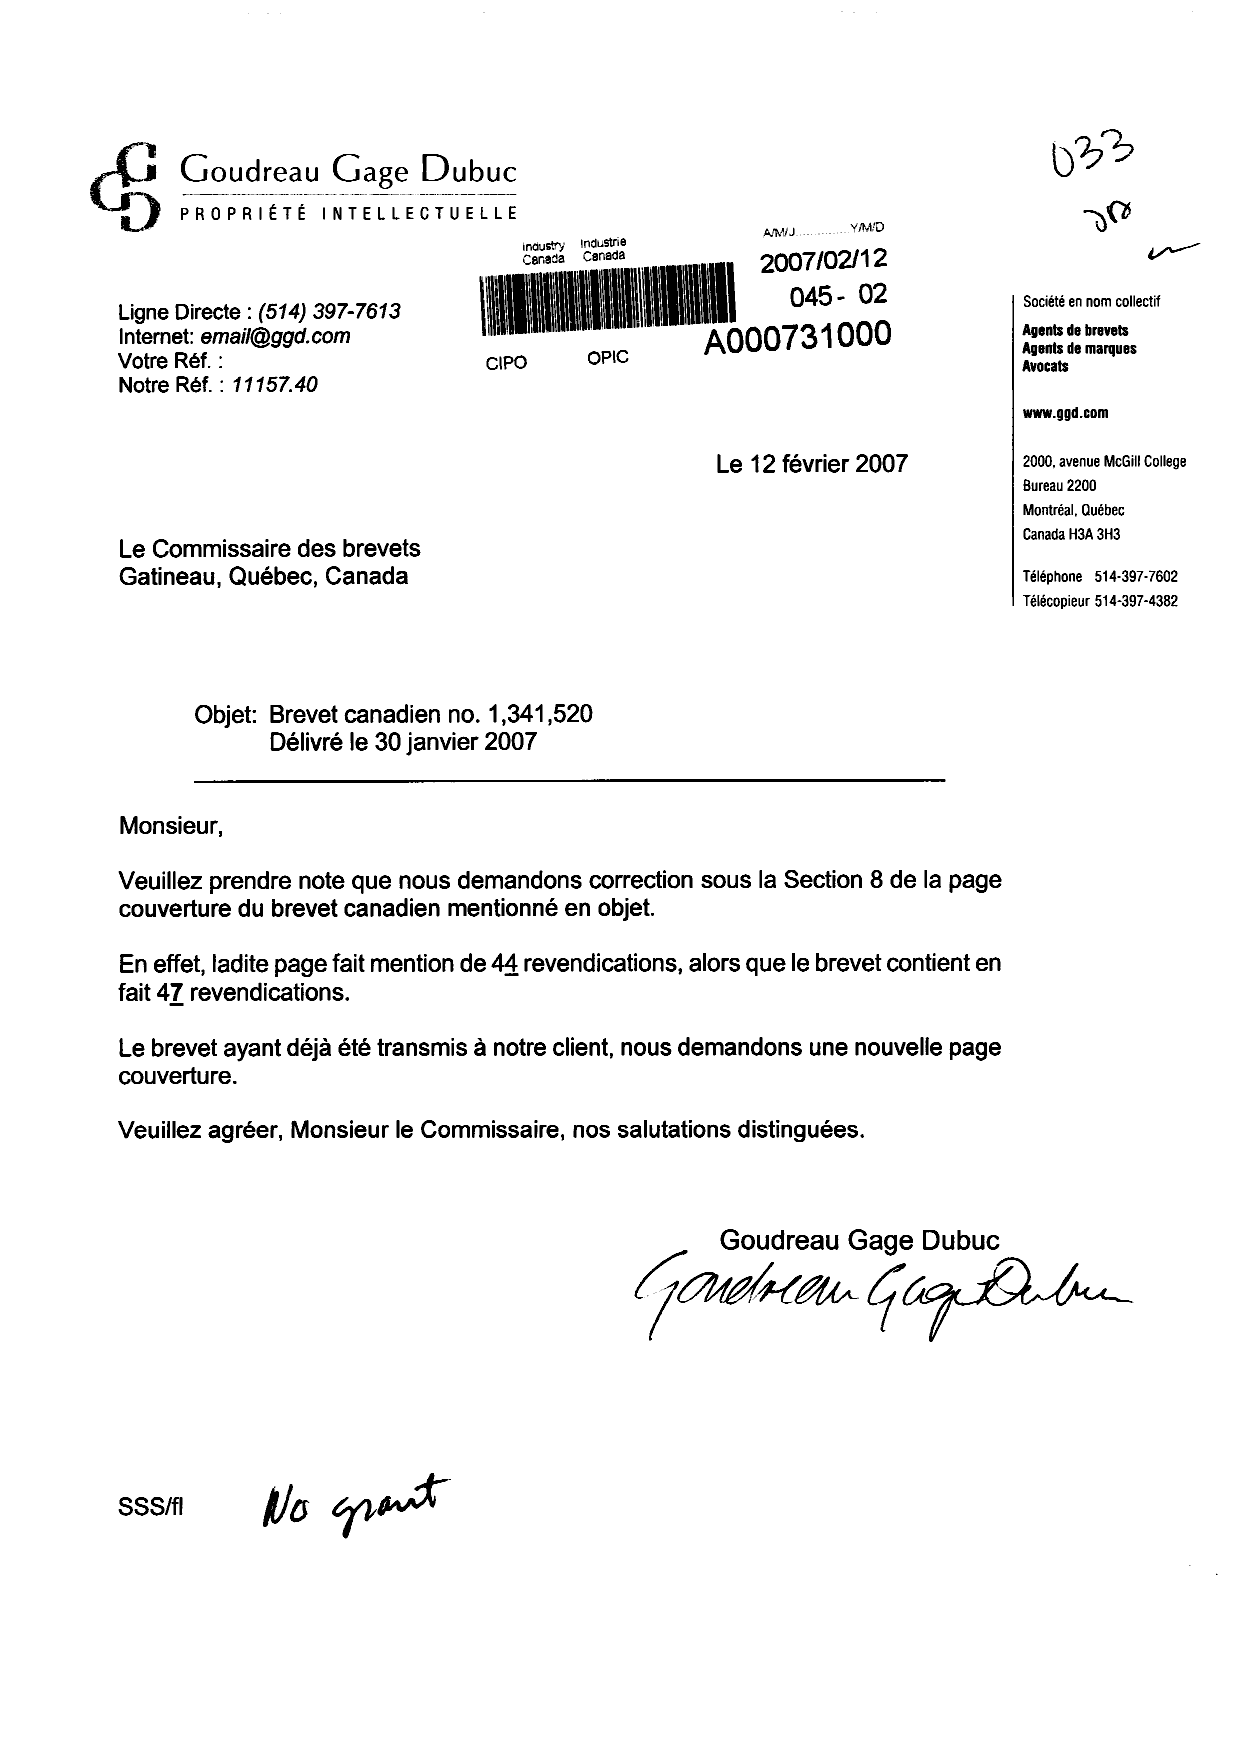 Document de brevet canadien 1341520. Correspondance 20070212. Image 1 de 1